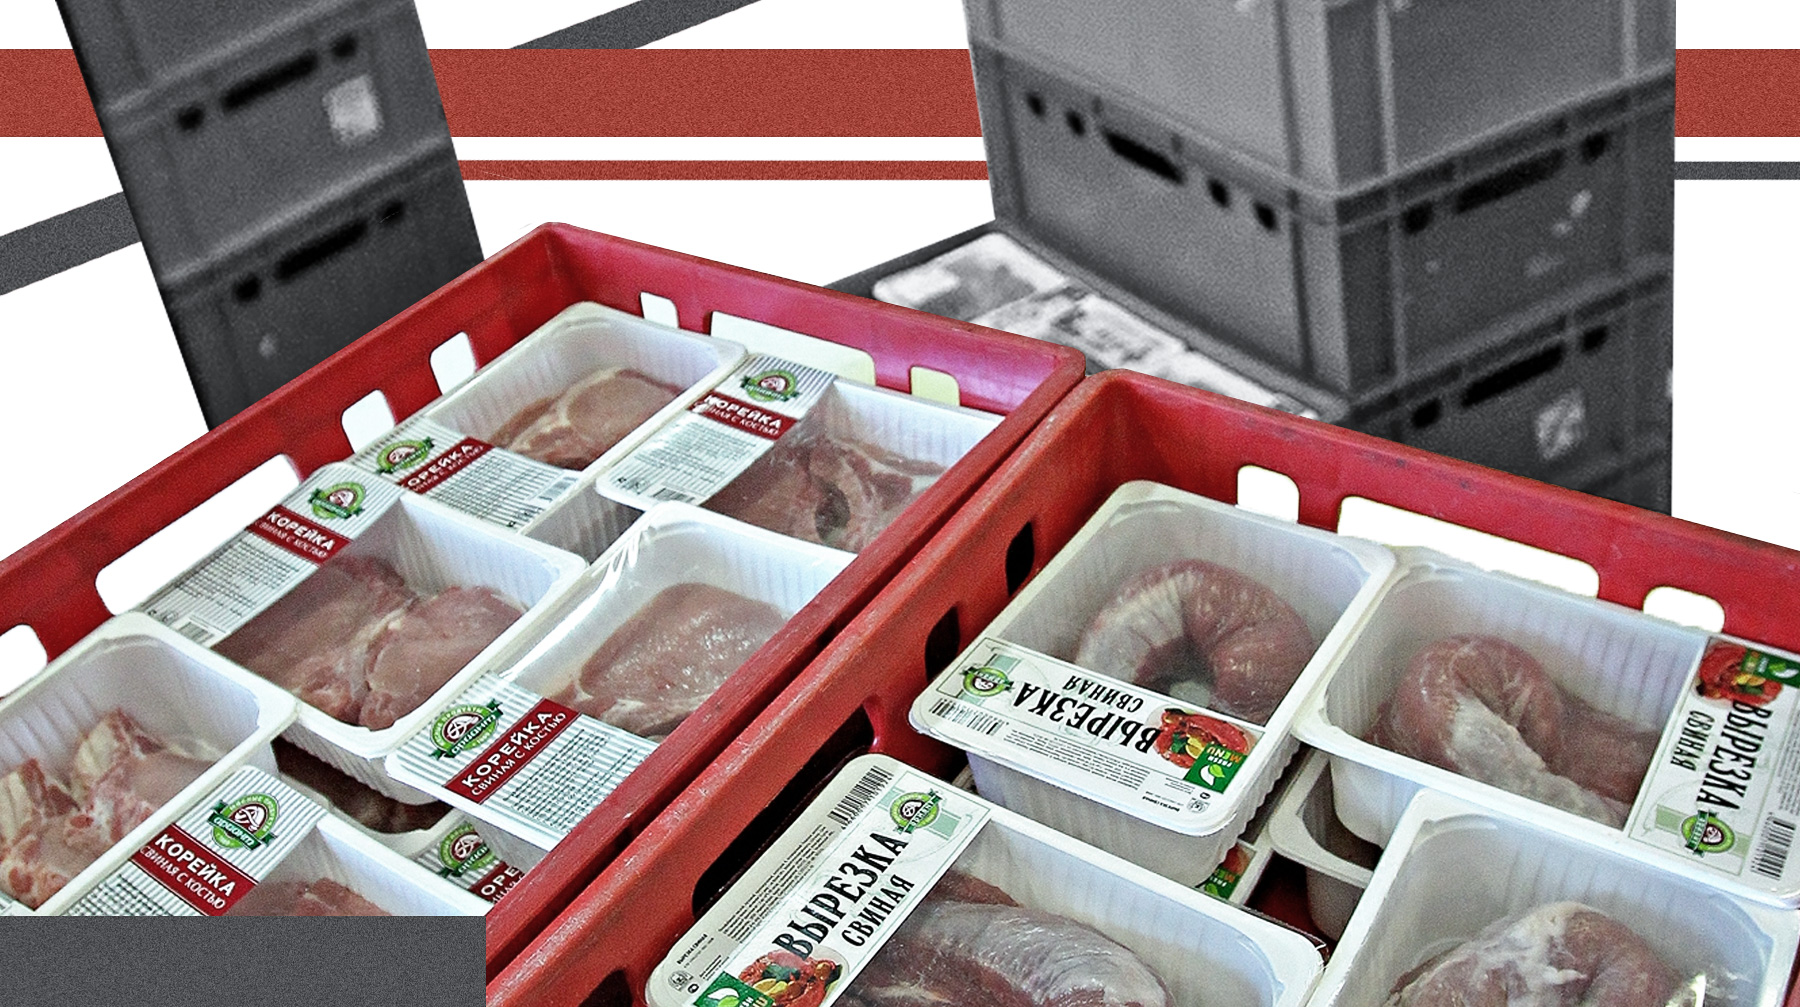 Производители стали закупать больше курятины и добавлять ее в дорогие виды колбас и других мясных изделий Коллаж: © Daily Storm